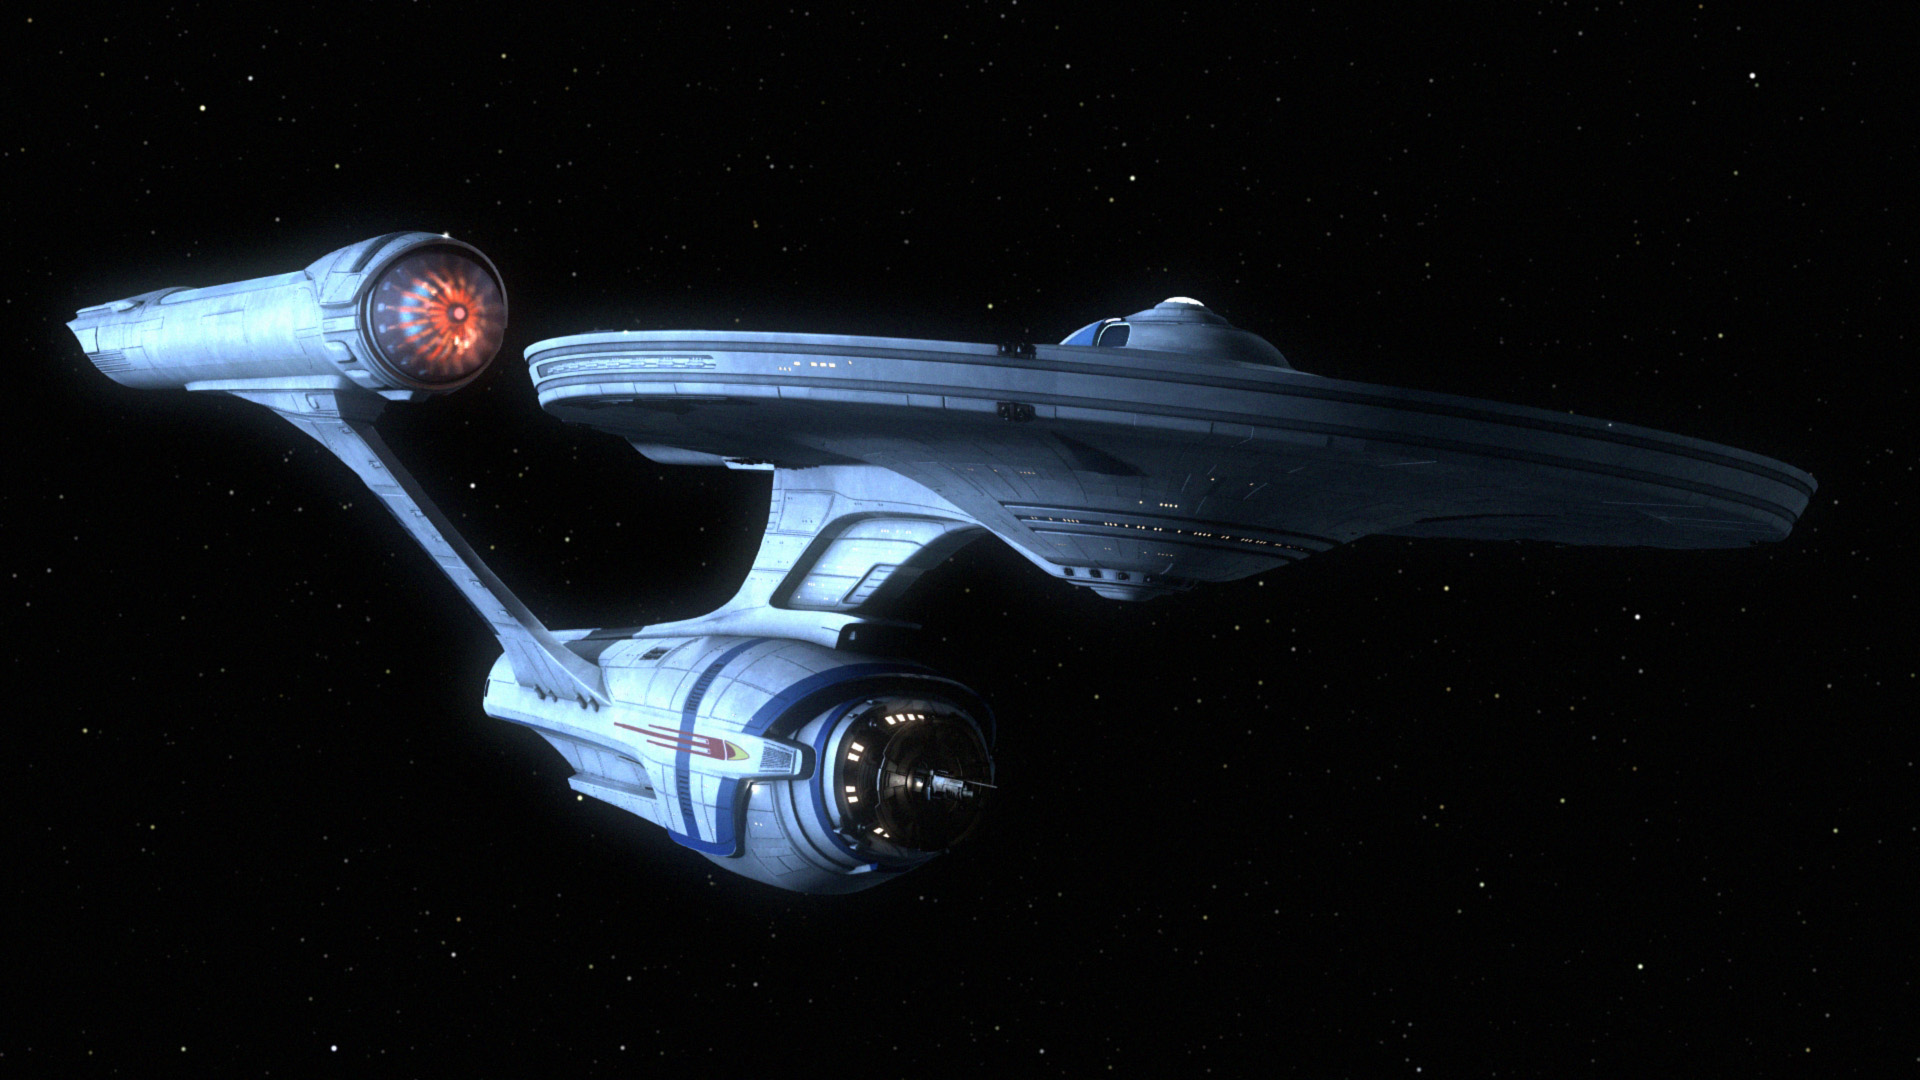 звездный путь, космические корабли, USS Enterprise - обои на рабочий стол